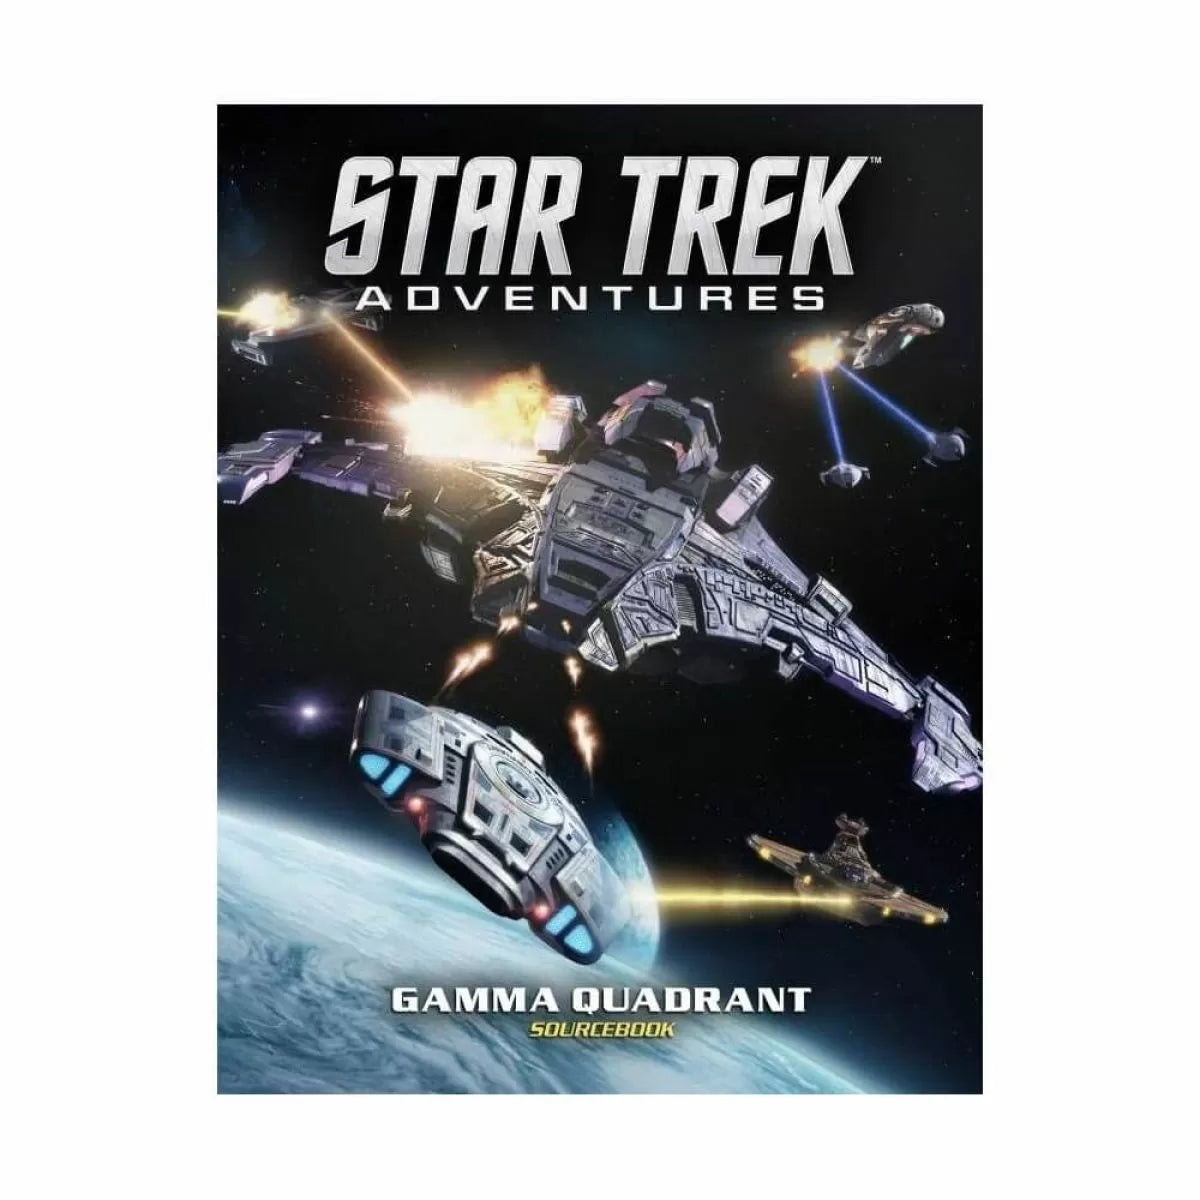 Star Trek Adventures - Gamma Quadrant Sourcebook